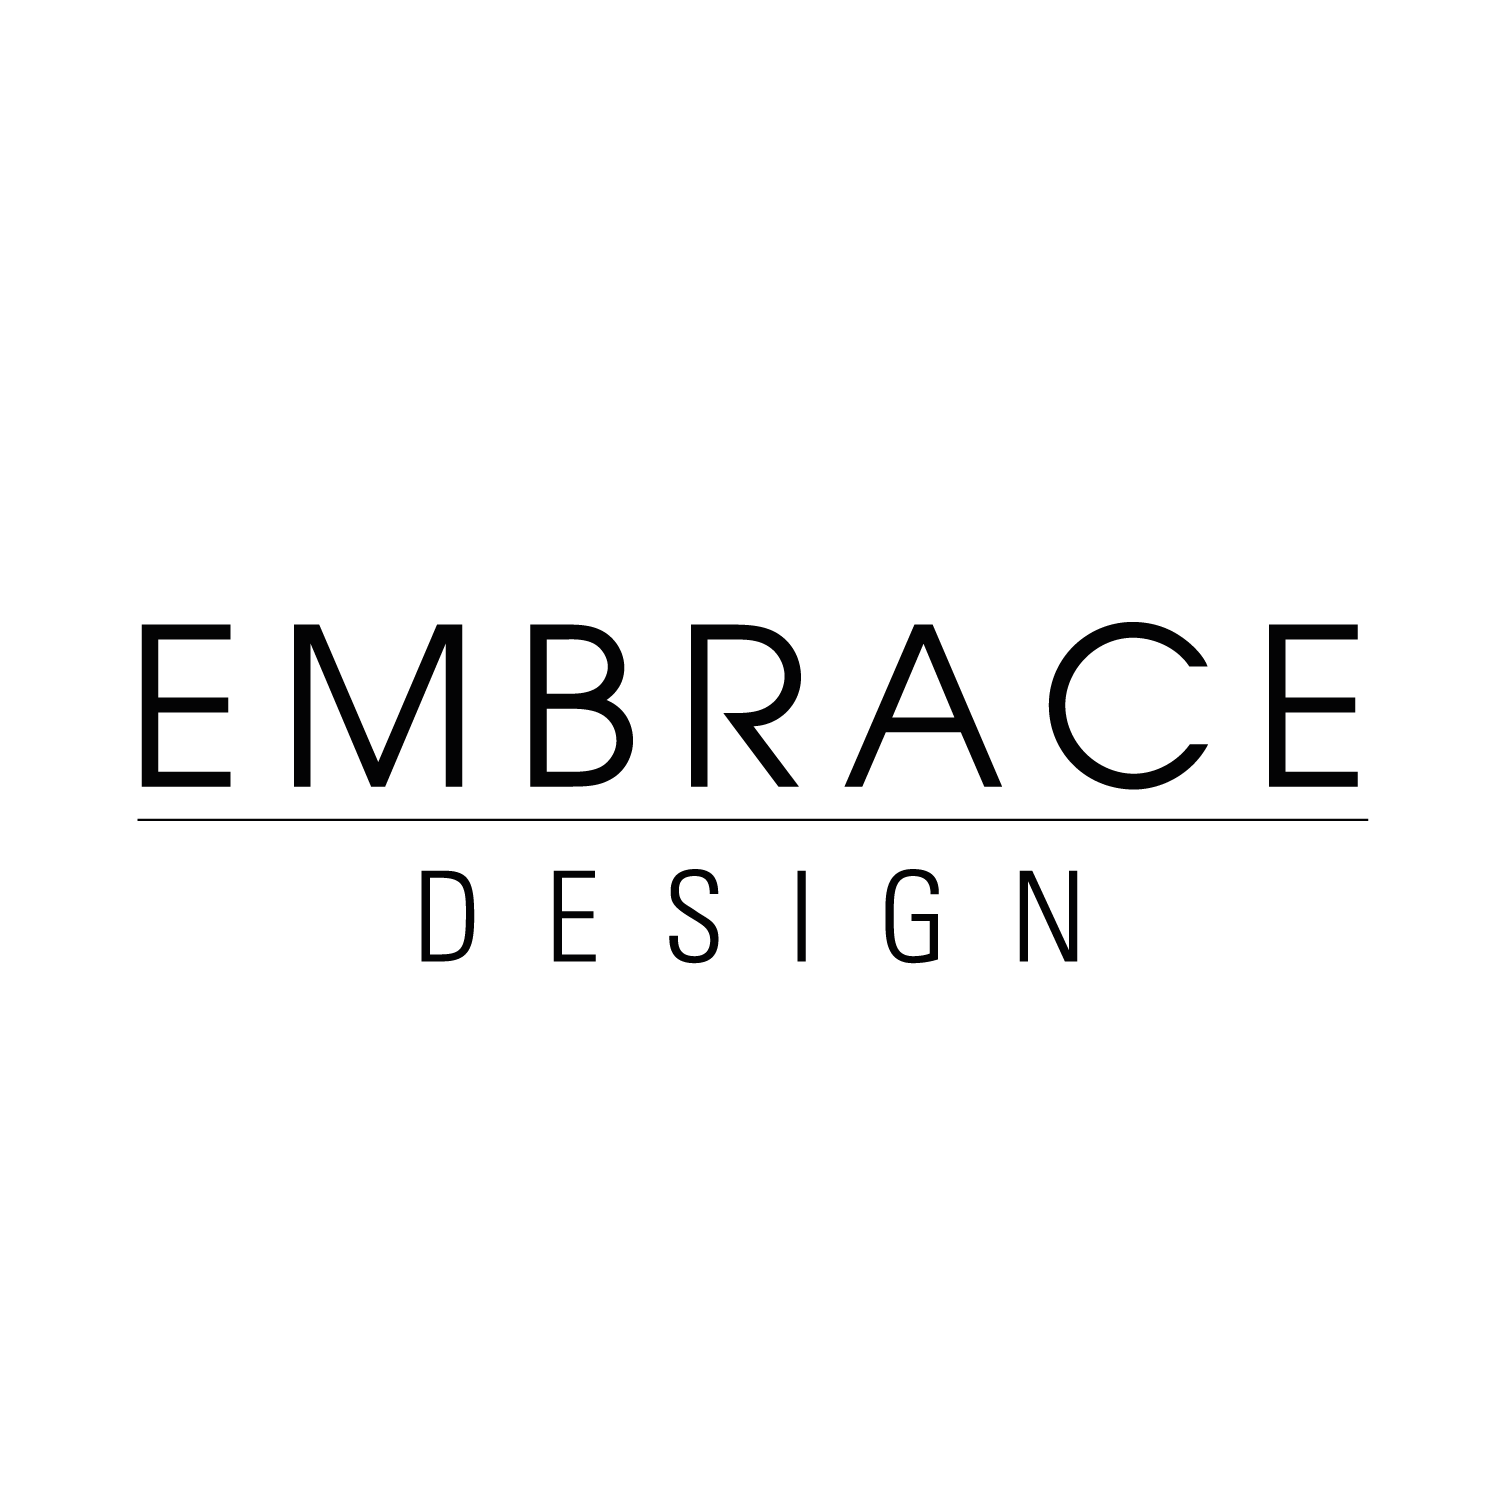 Embrace Design